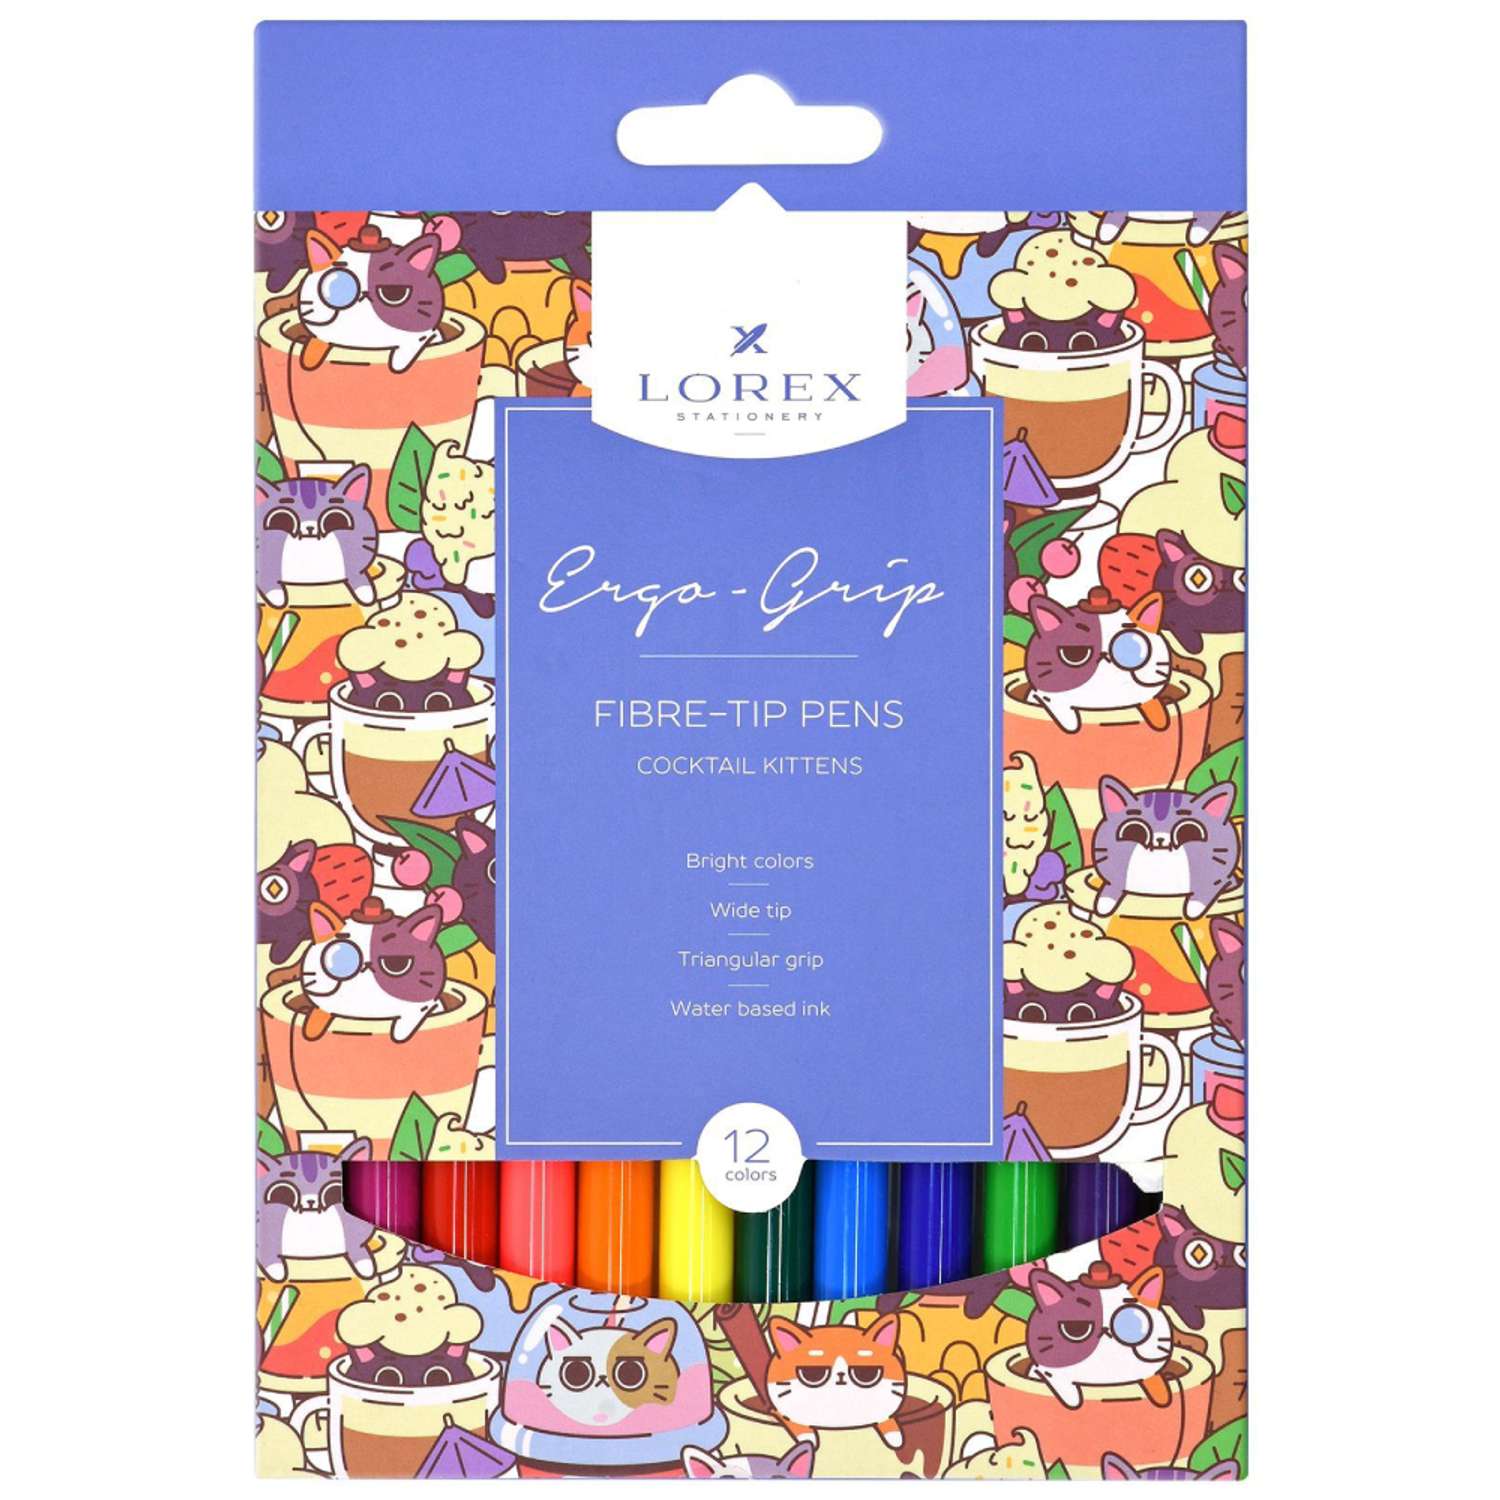 Фломастеры Lorex Stationery для рисования детские Cocktail kittens набор 12 цветов трехгранные - фото 1